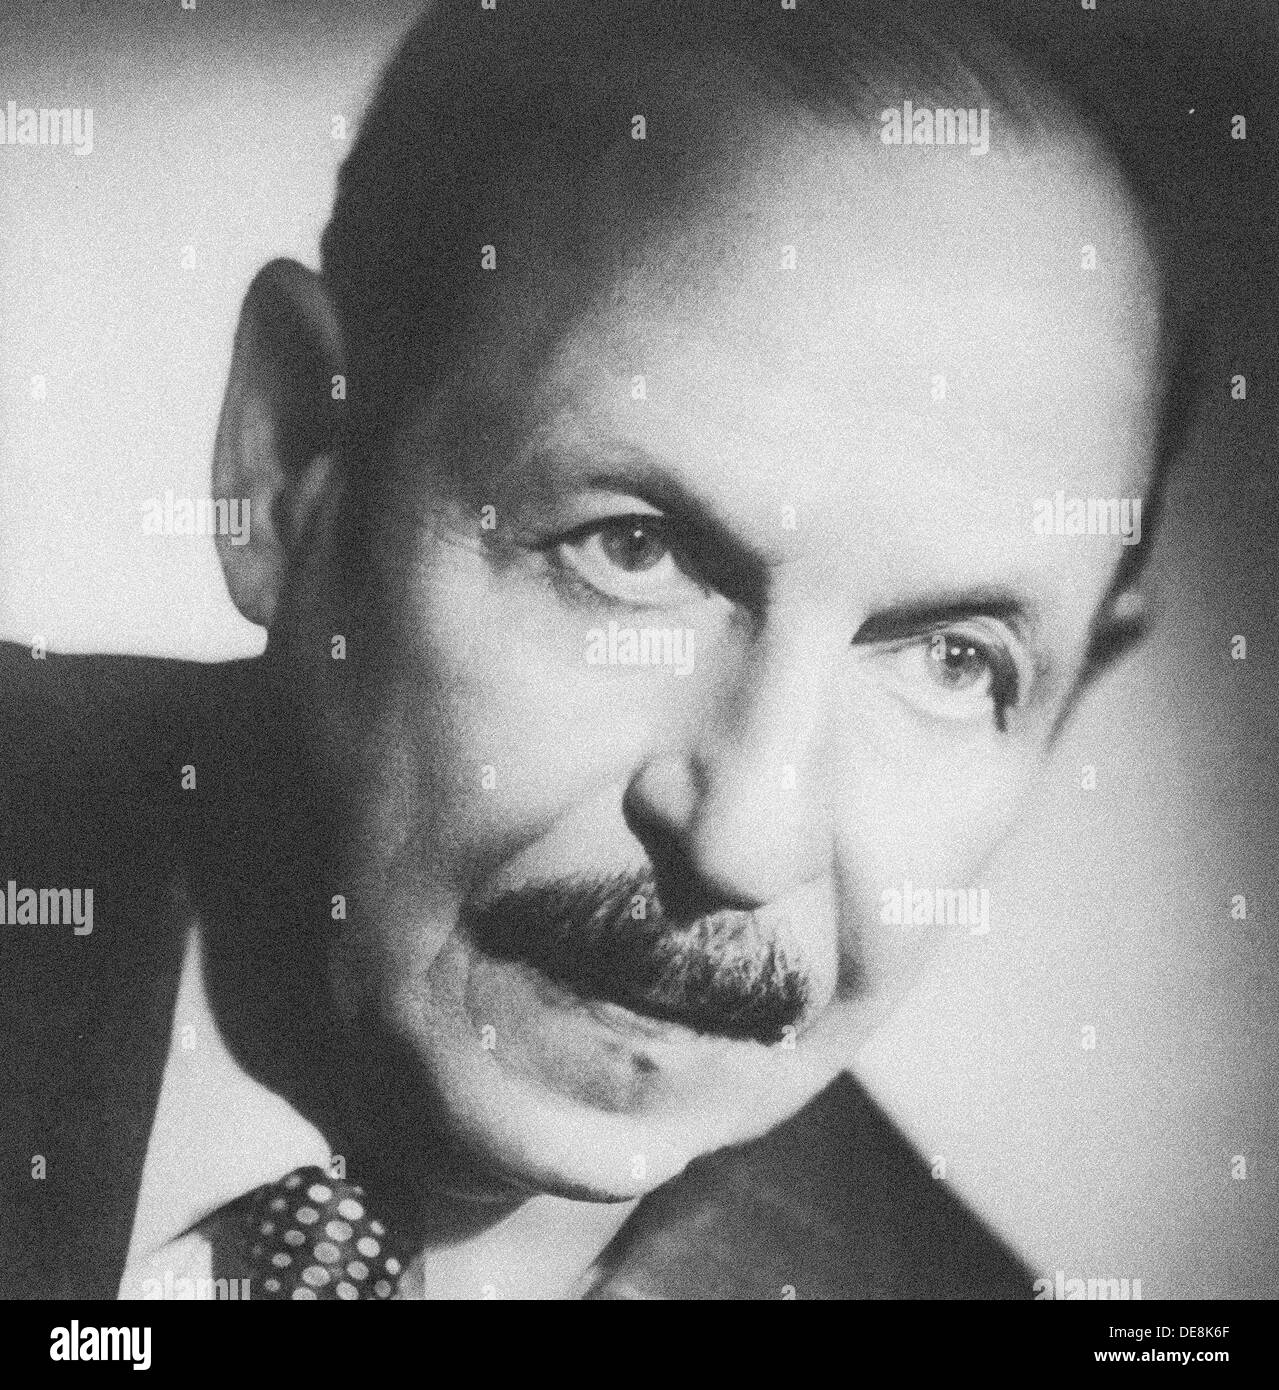 Emmerich Kálmán, 1930s (?). Stock Photo